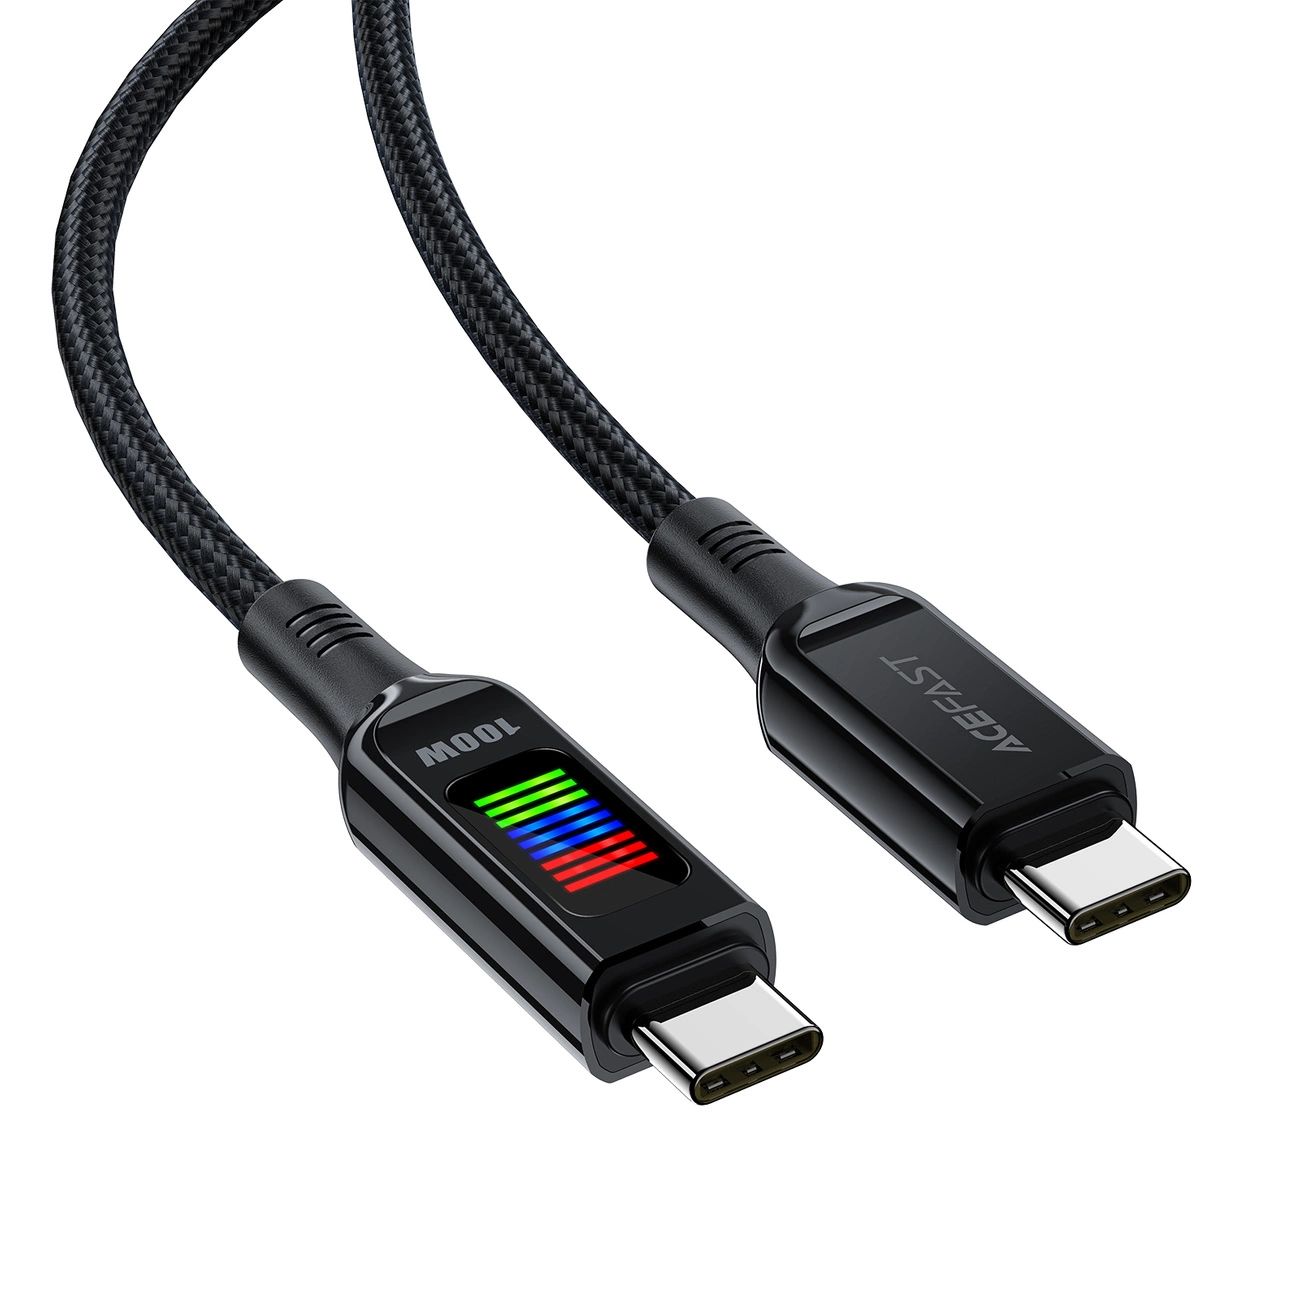 Kabel Acefast C7-03 USB-C USB-C 100W 1.2m z wyświetlaczem - czarny